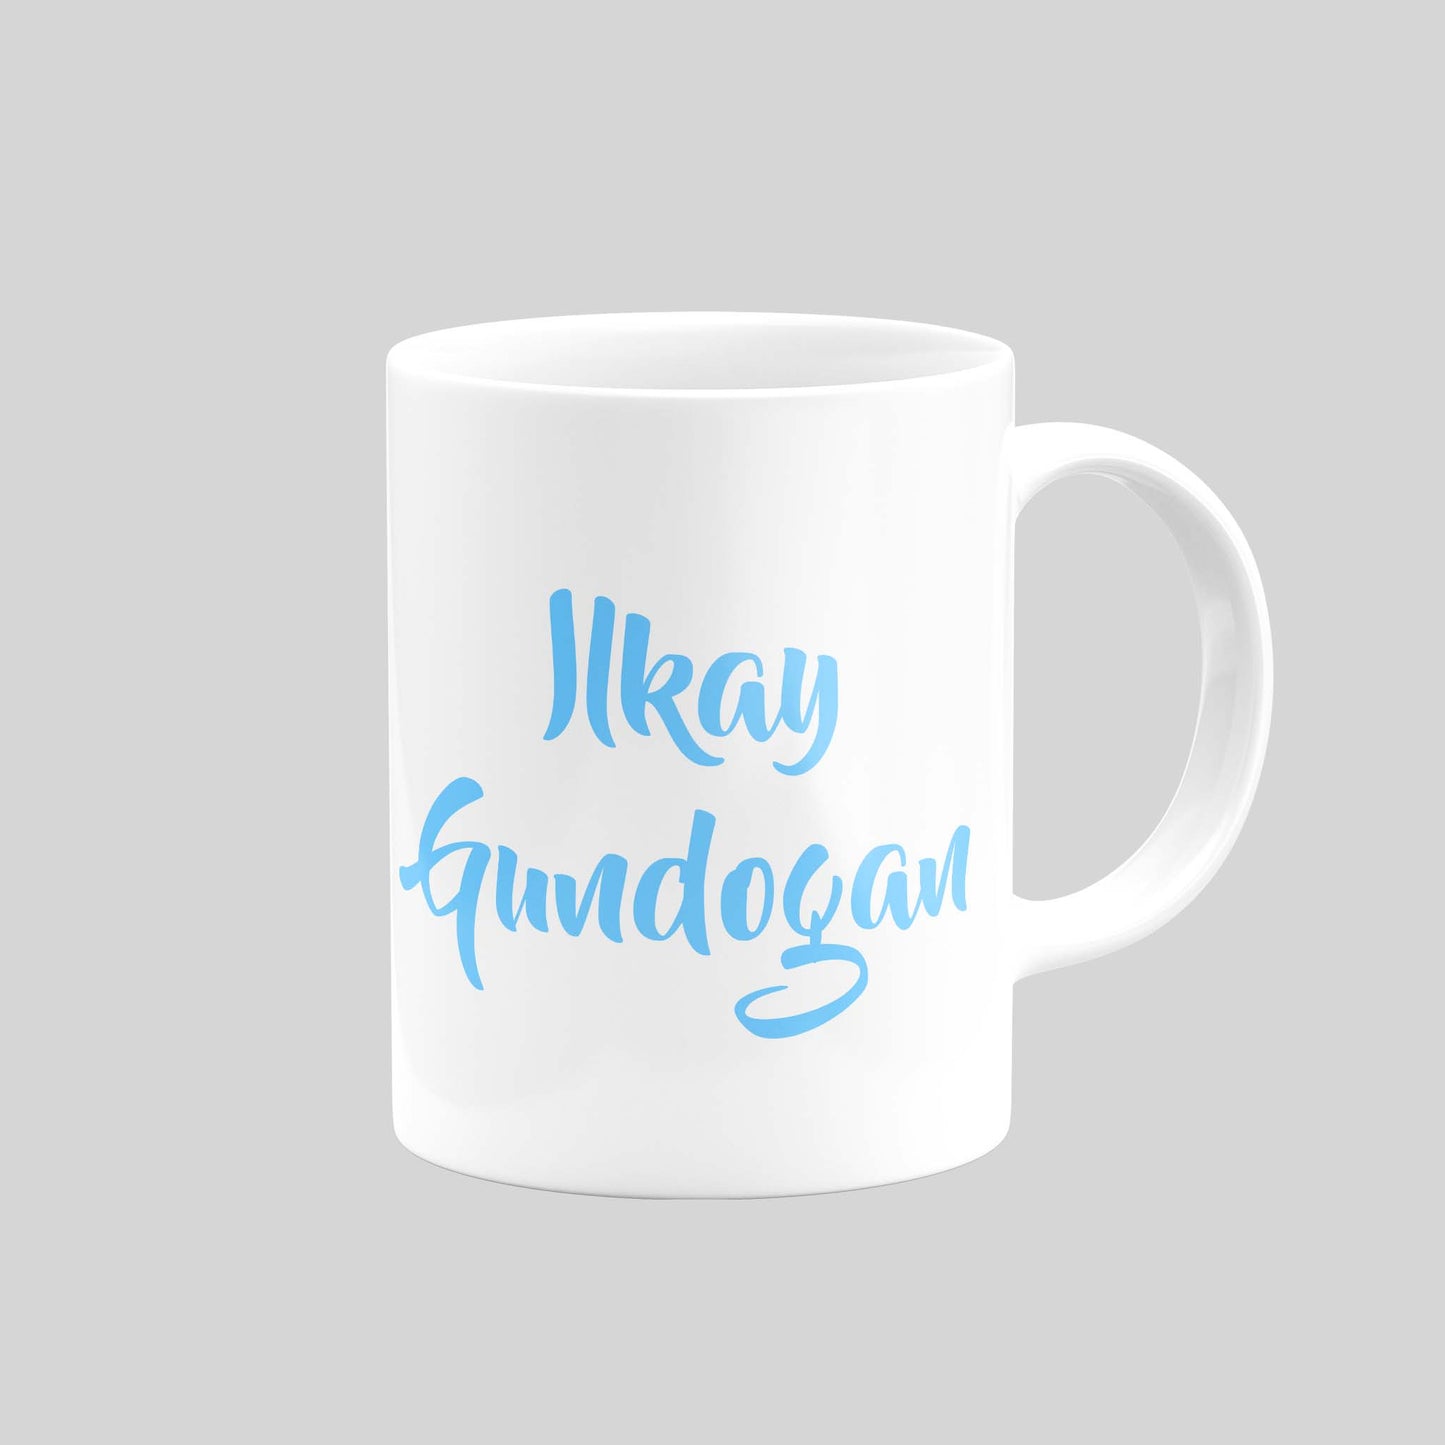 Ilkay Gundogan Mug